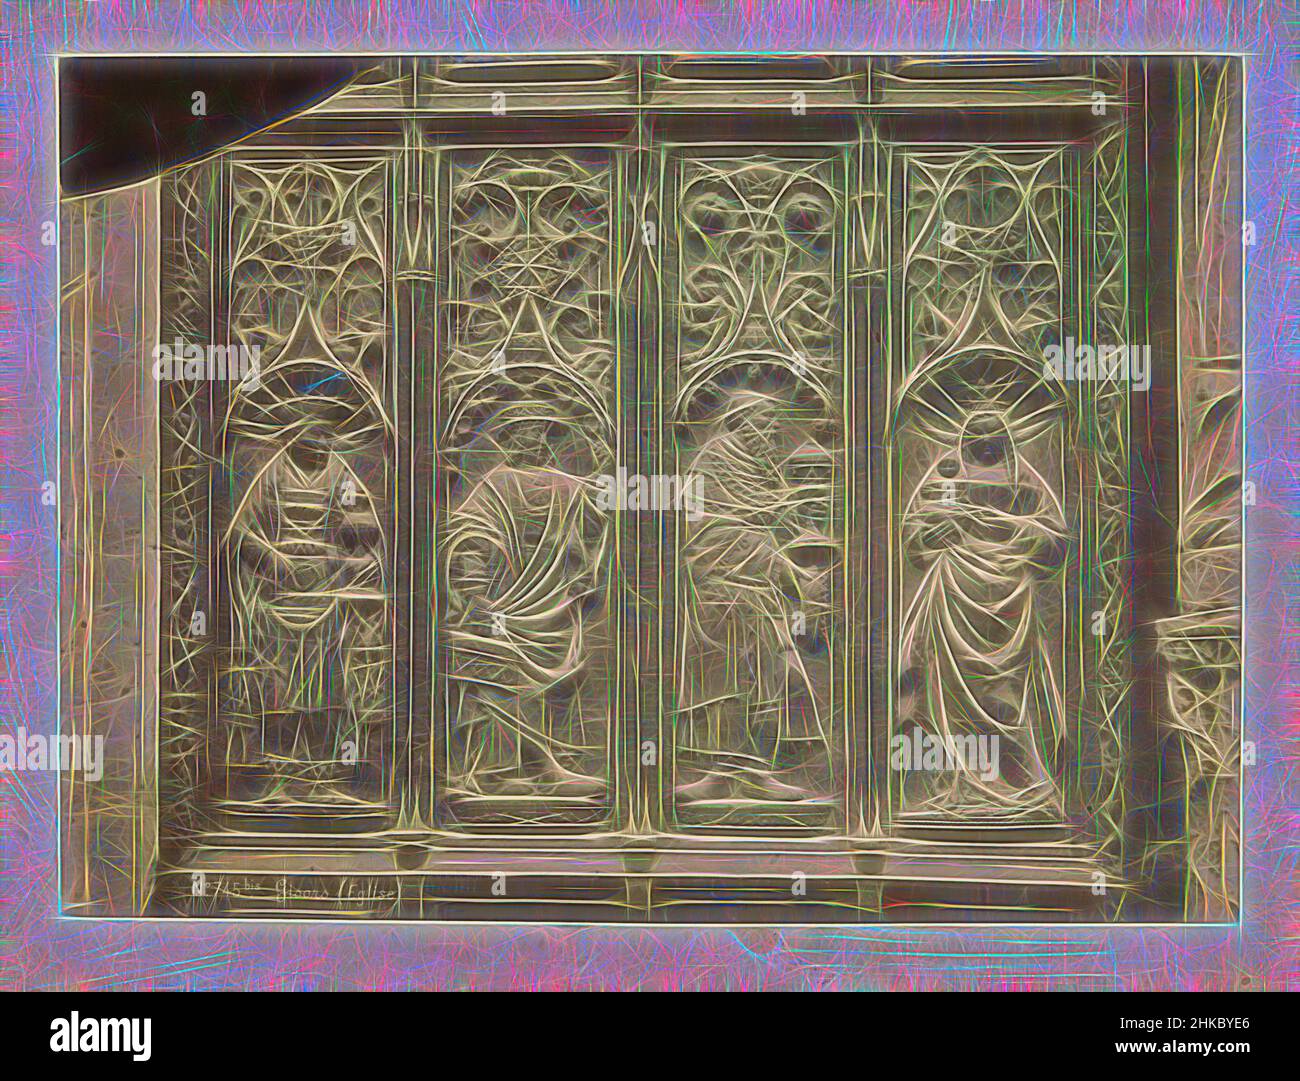 Inspiriert von Relief mit der Anbetung der Könige in der Stiftskirche Saint-Gervais-Saint-Protais in Gisors, Gisors (Eglise), Séraphin-Médéric Mieusement, Gisors, c. 1875 - c. 1900, Albumendruck, Höhe 251 mm × Breite 345 mm, neu gestaltet von Artotop. Klassische Kunst neu erfunden mit einem modernen Twist. Design von warmen fröhlichen Leuchten der Helligkeit und Lichtstrahl Strahlkraft. Fotografie inspiriert von Surrealismus und Futurismus, umarmt dynamische Energie der modernen Technologie, Bewegung, Geschwindigkeit und Kultur zu revolutionieren Stockfoto